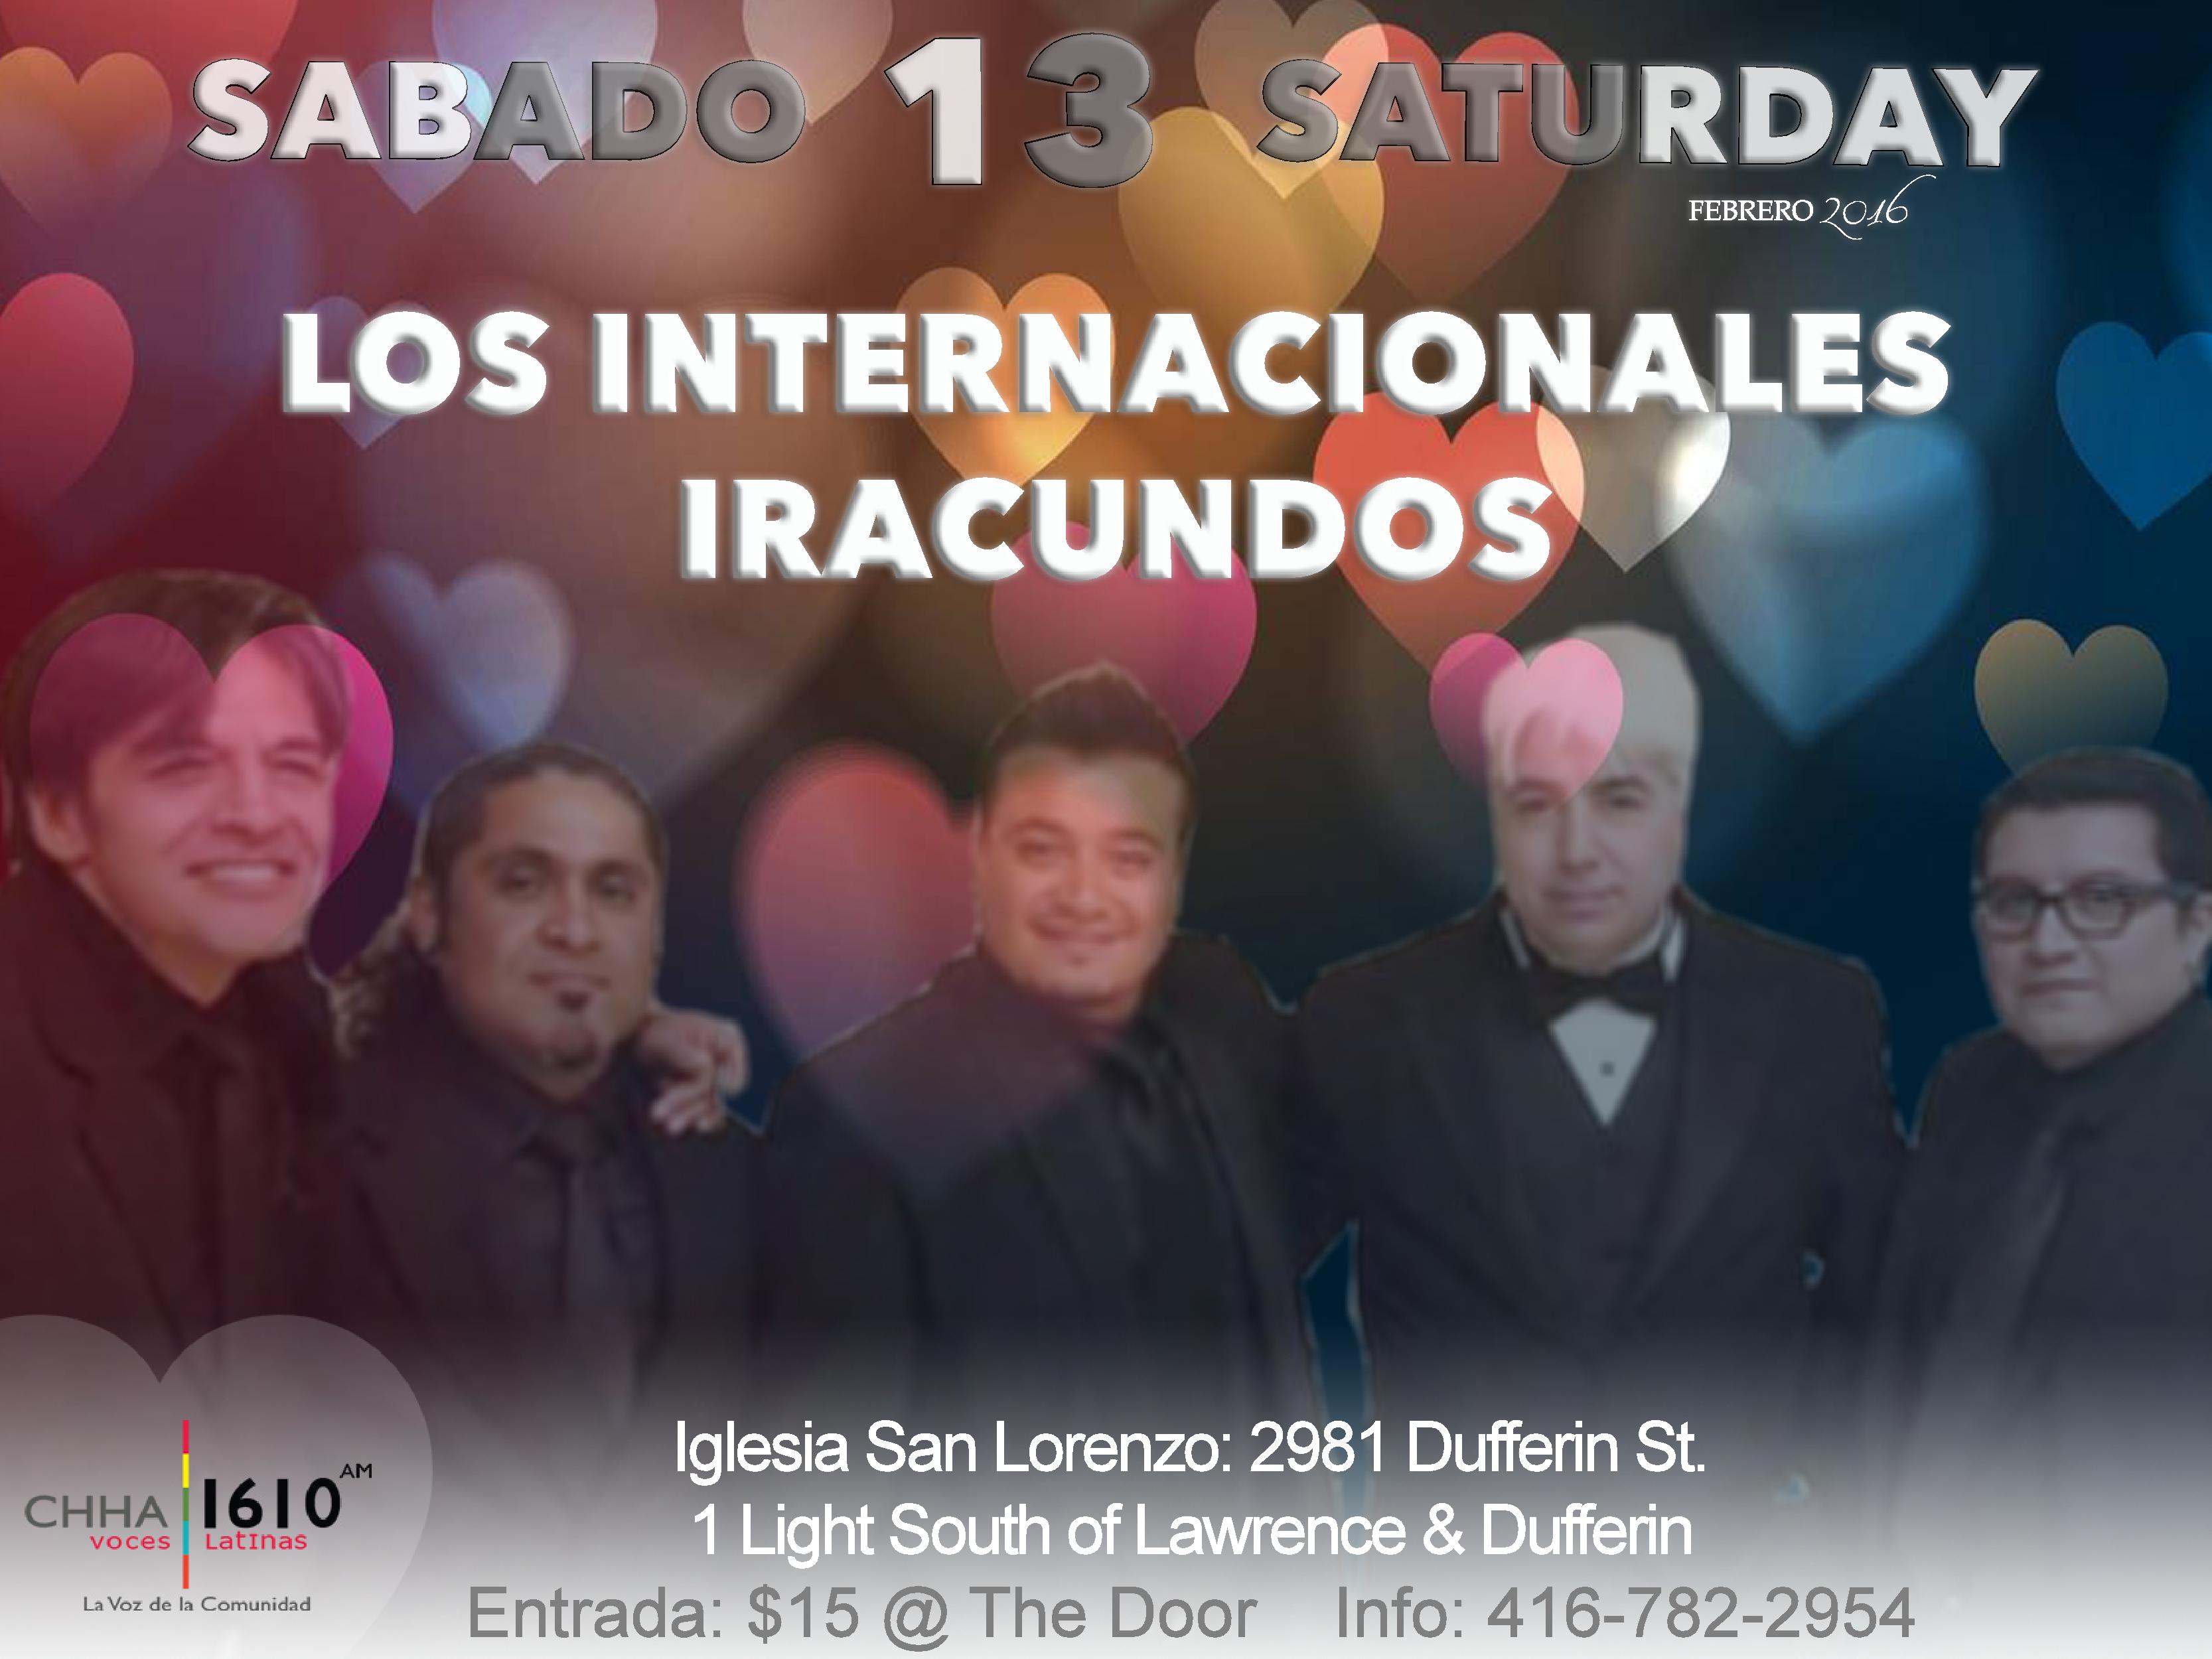 Los Internacionales Iracundos Realizan Concierto en Iglesia San Lorenzo